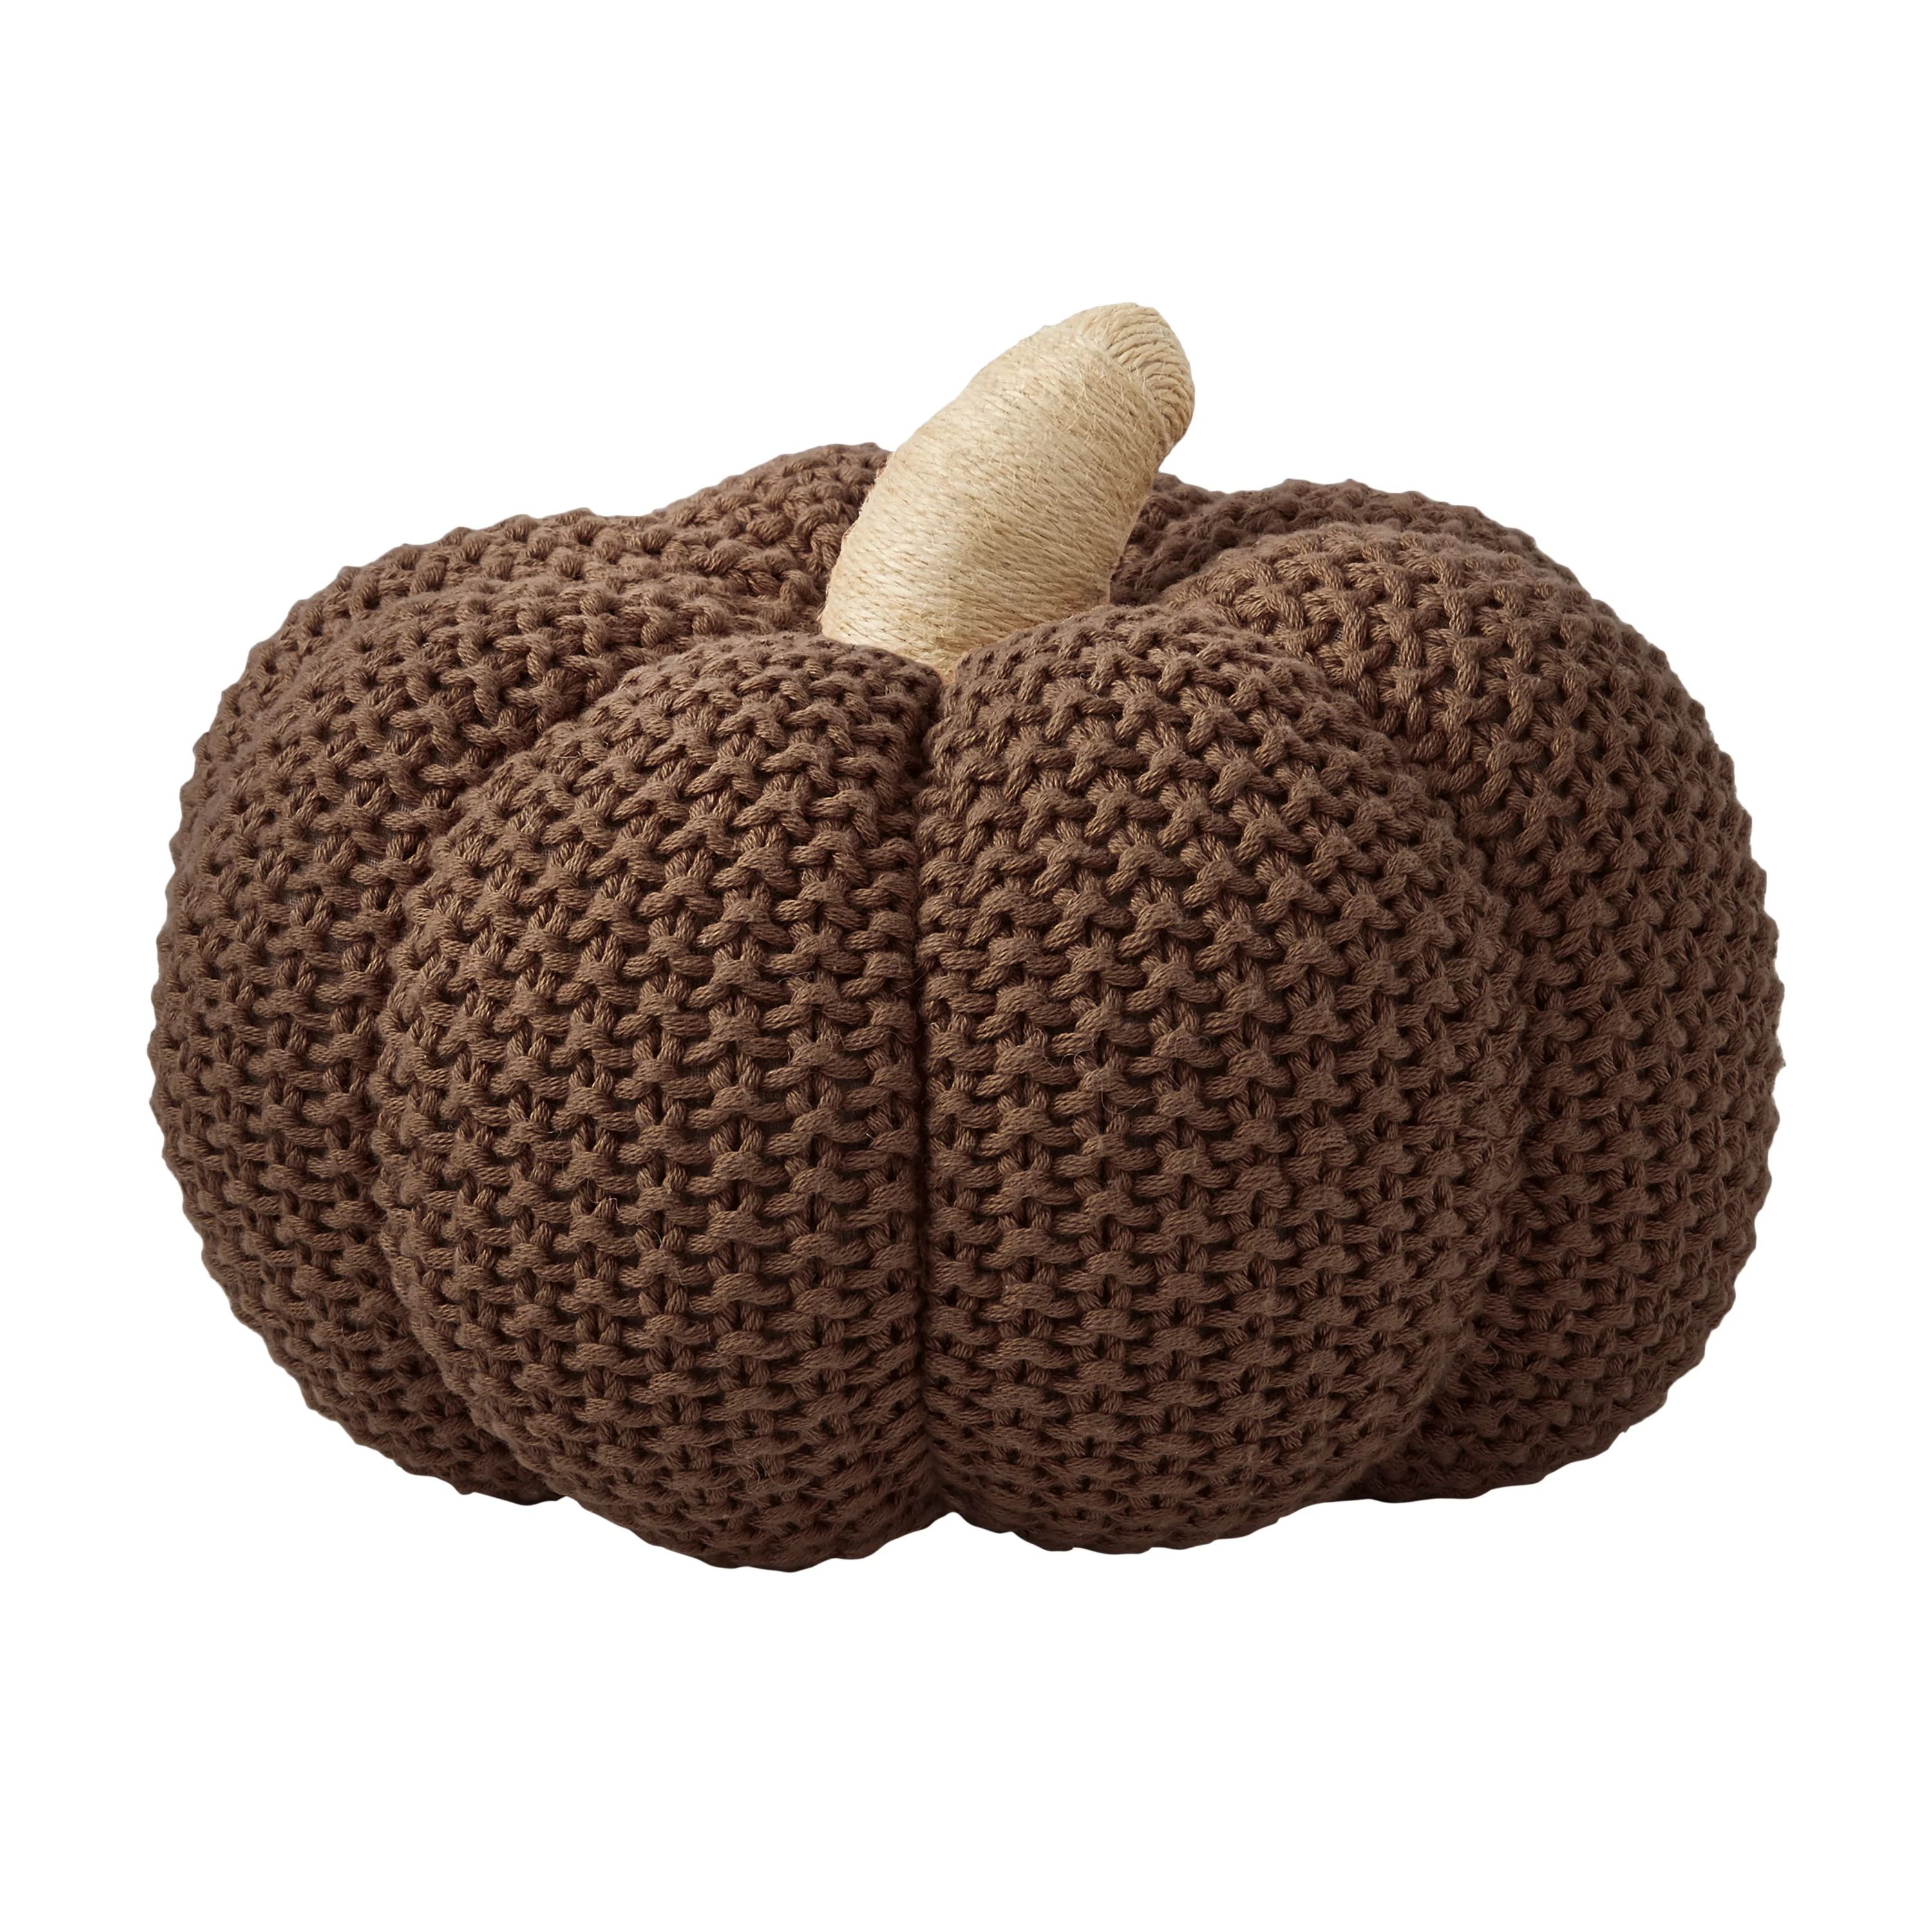 Better Homes & Gardens Chocolate 3D Knit Pumpkin by Dave & Jenny Marrs - Walmart.com | Walmart (US)